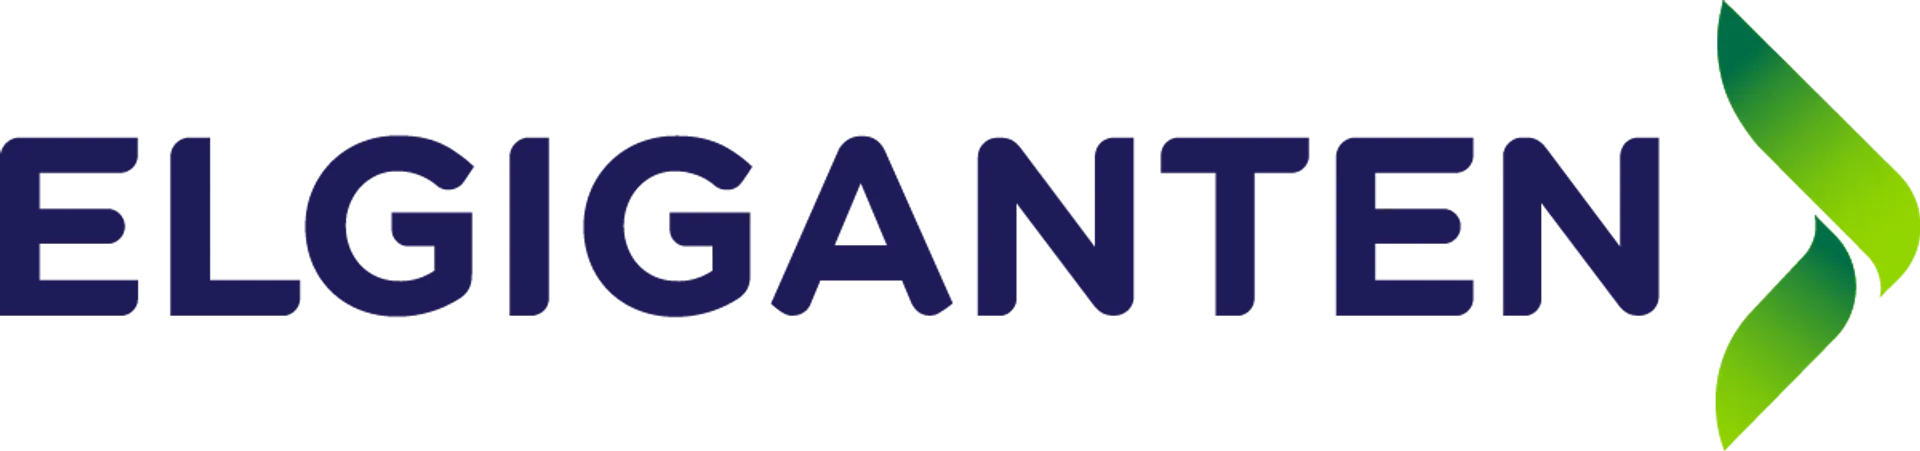 ELGIGANTEN logo